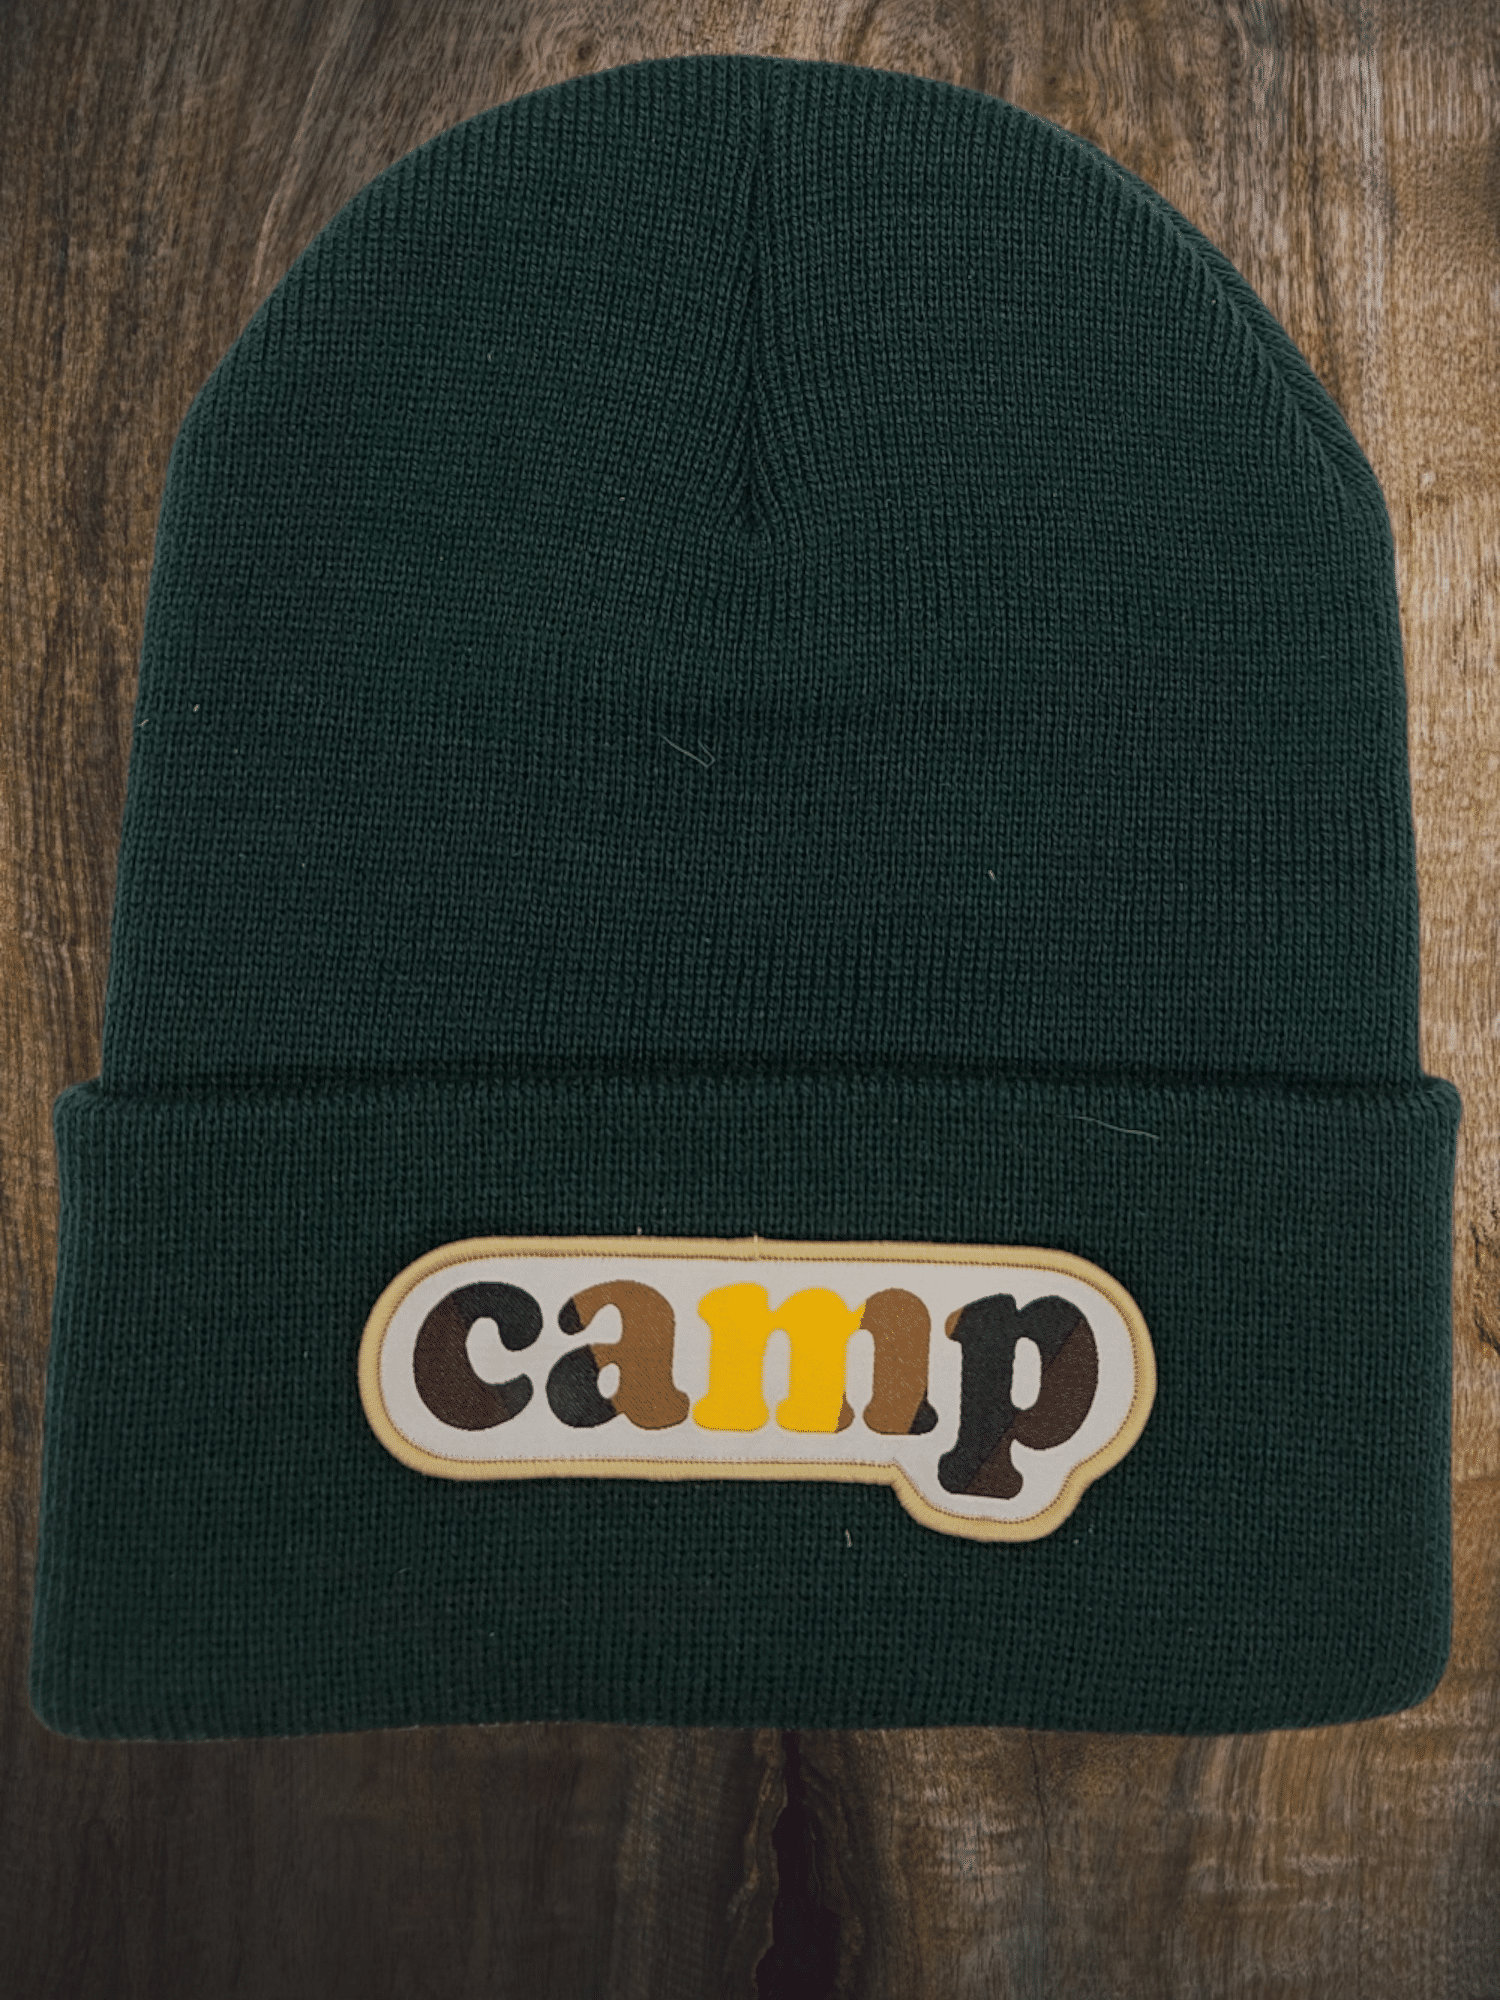 Camping Mütze Mit Camp Aufnäher von HatsPatches